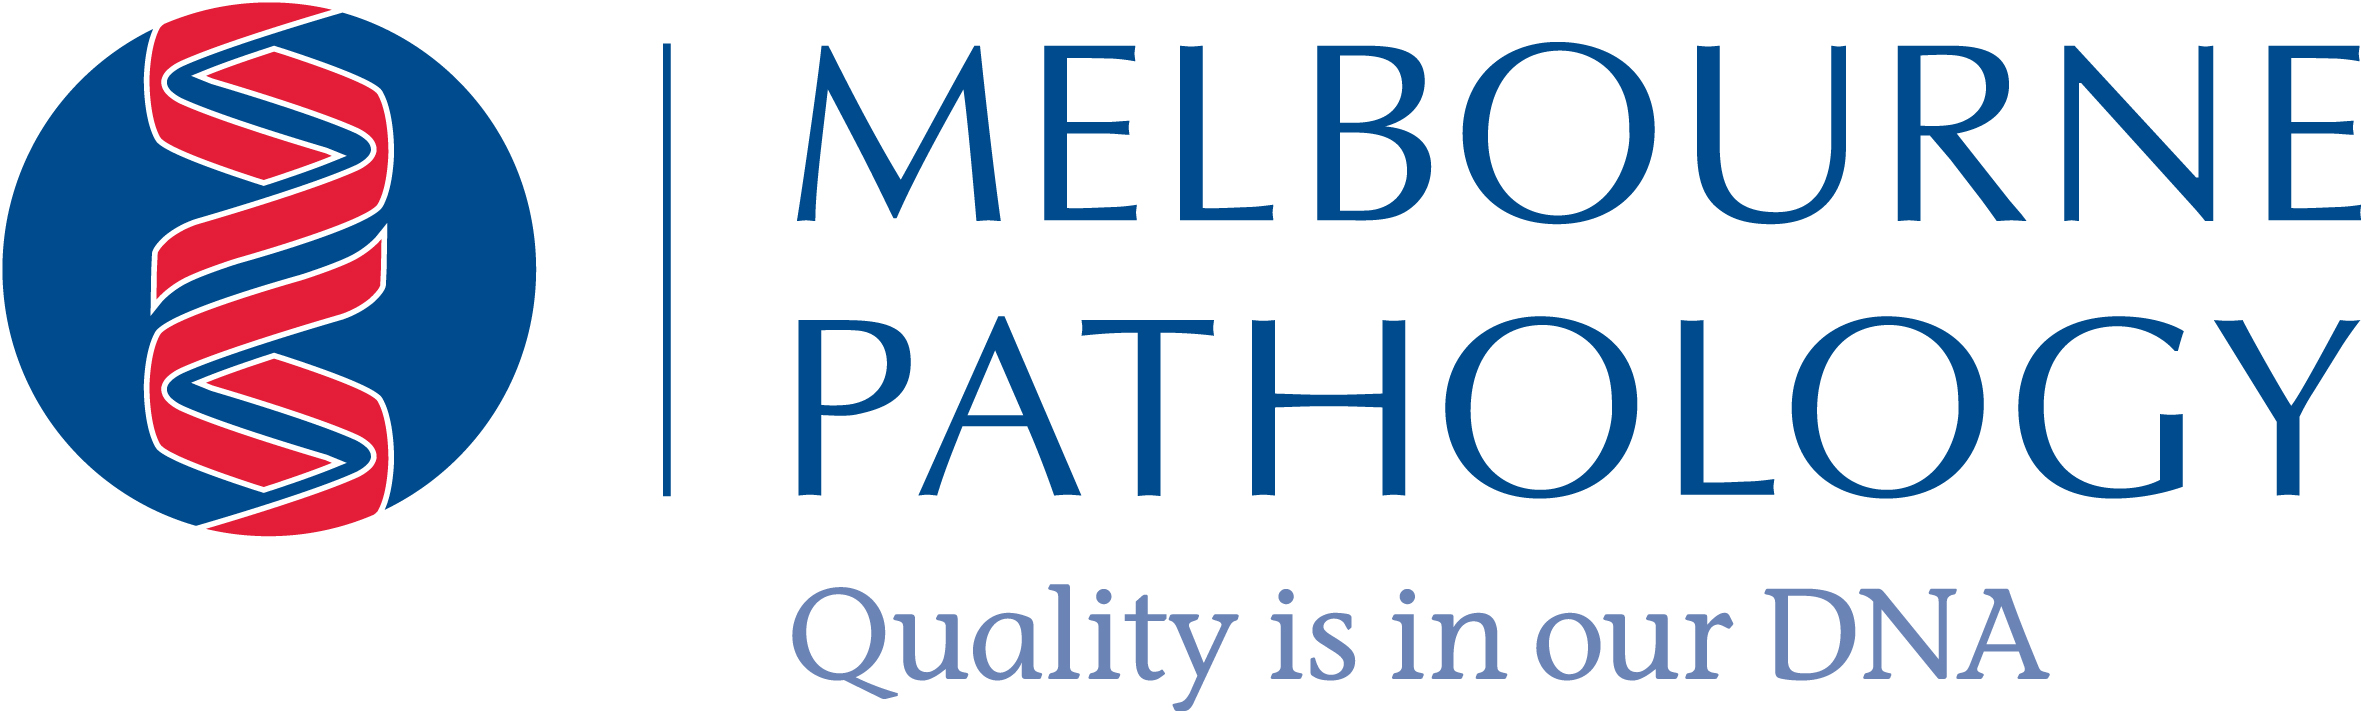 8677 Melbourne Pathology Master